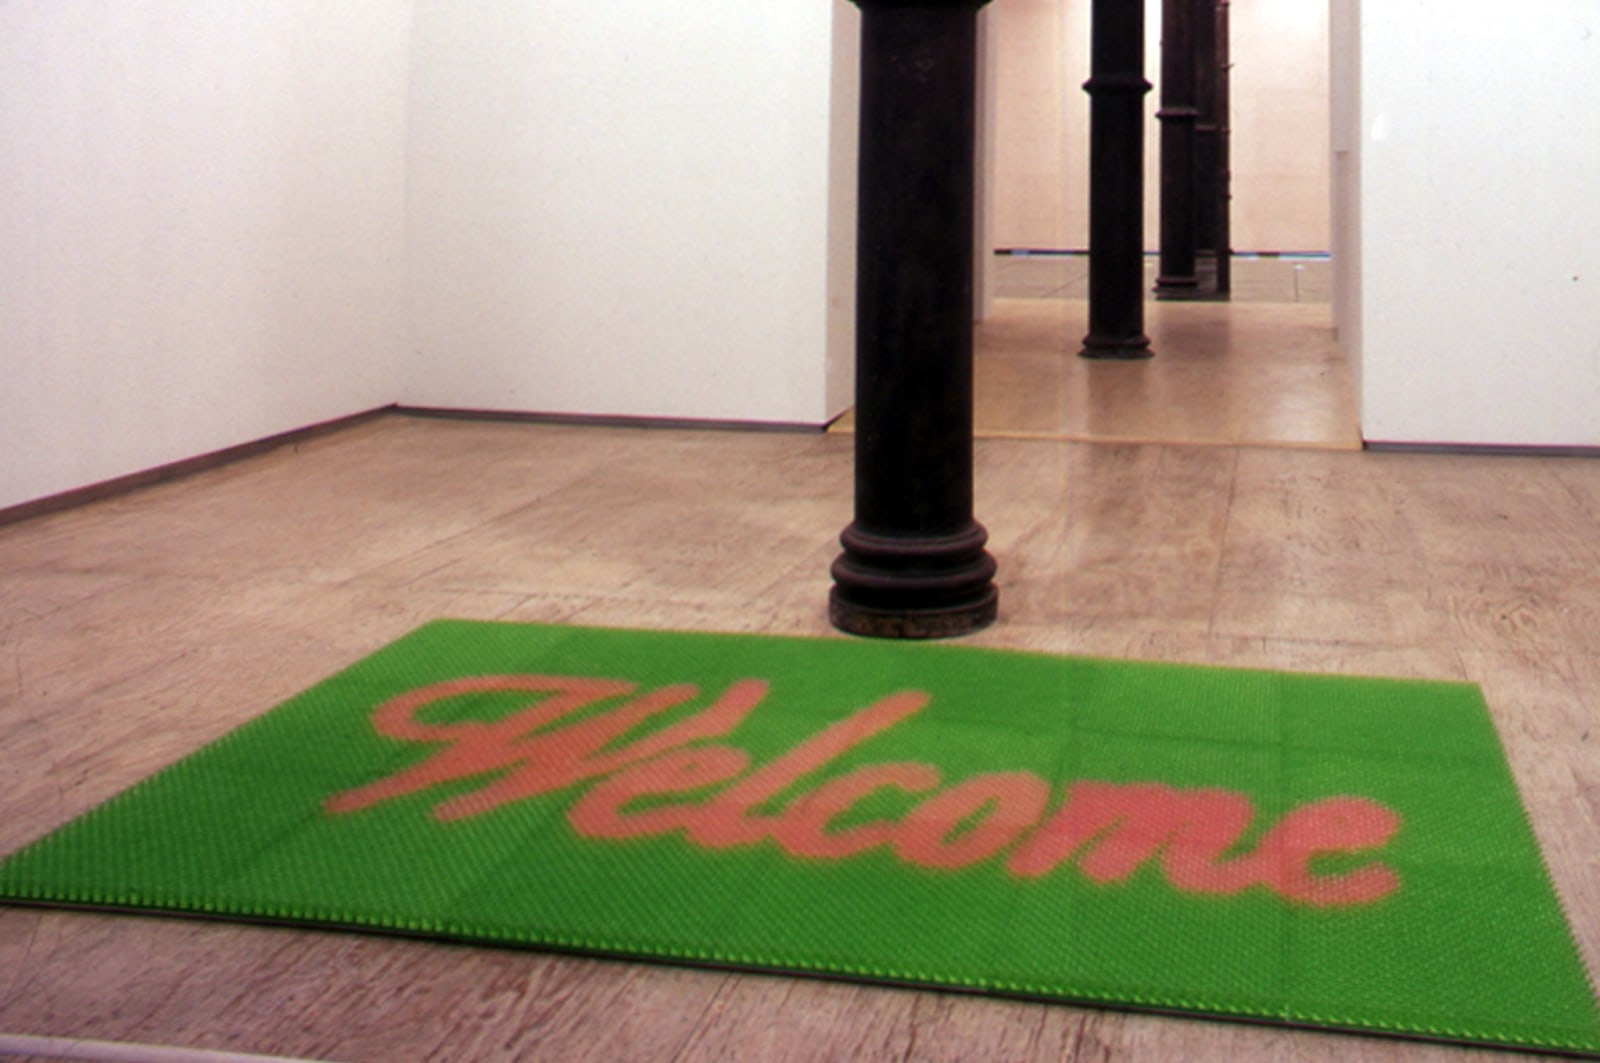 DO HO SUH, Doormat: Welcome (Green), 2000